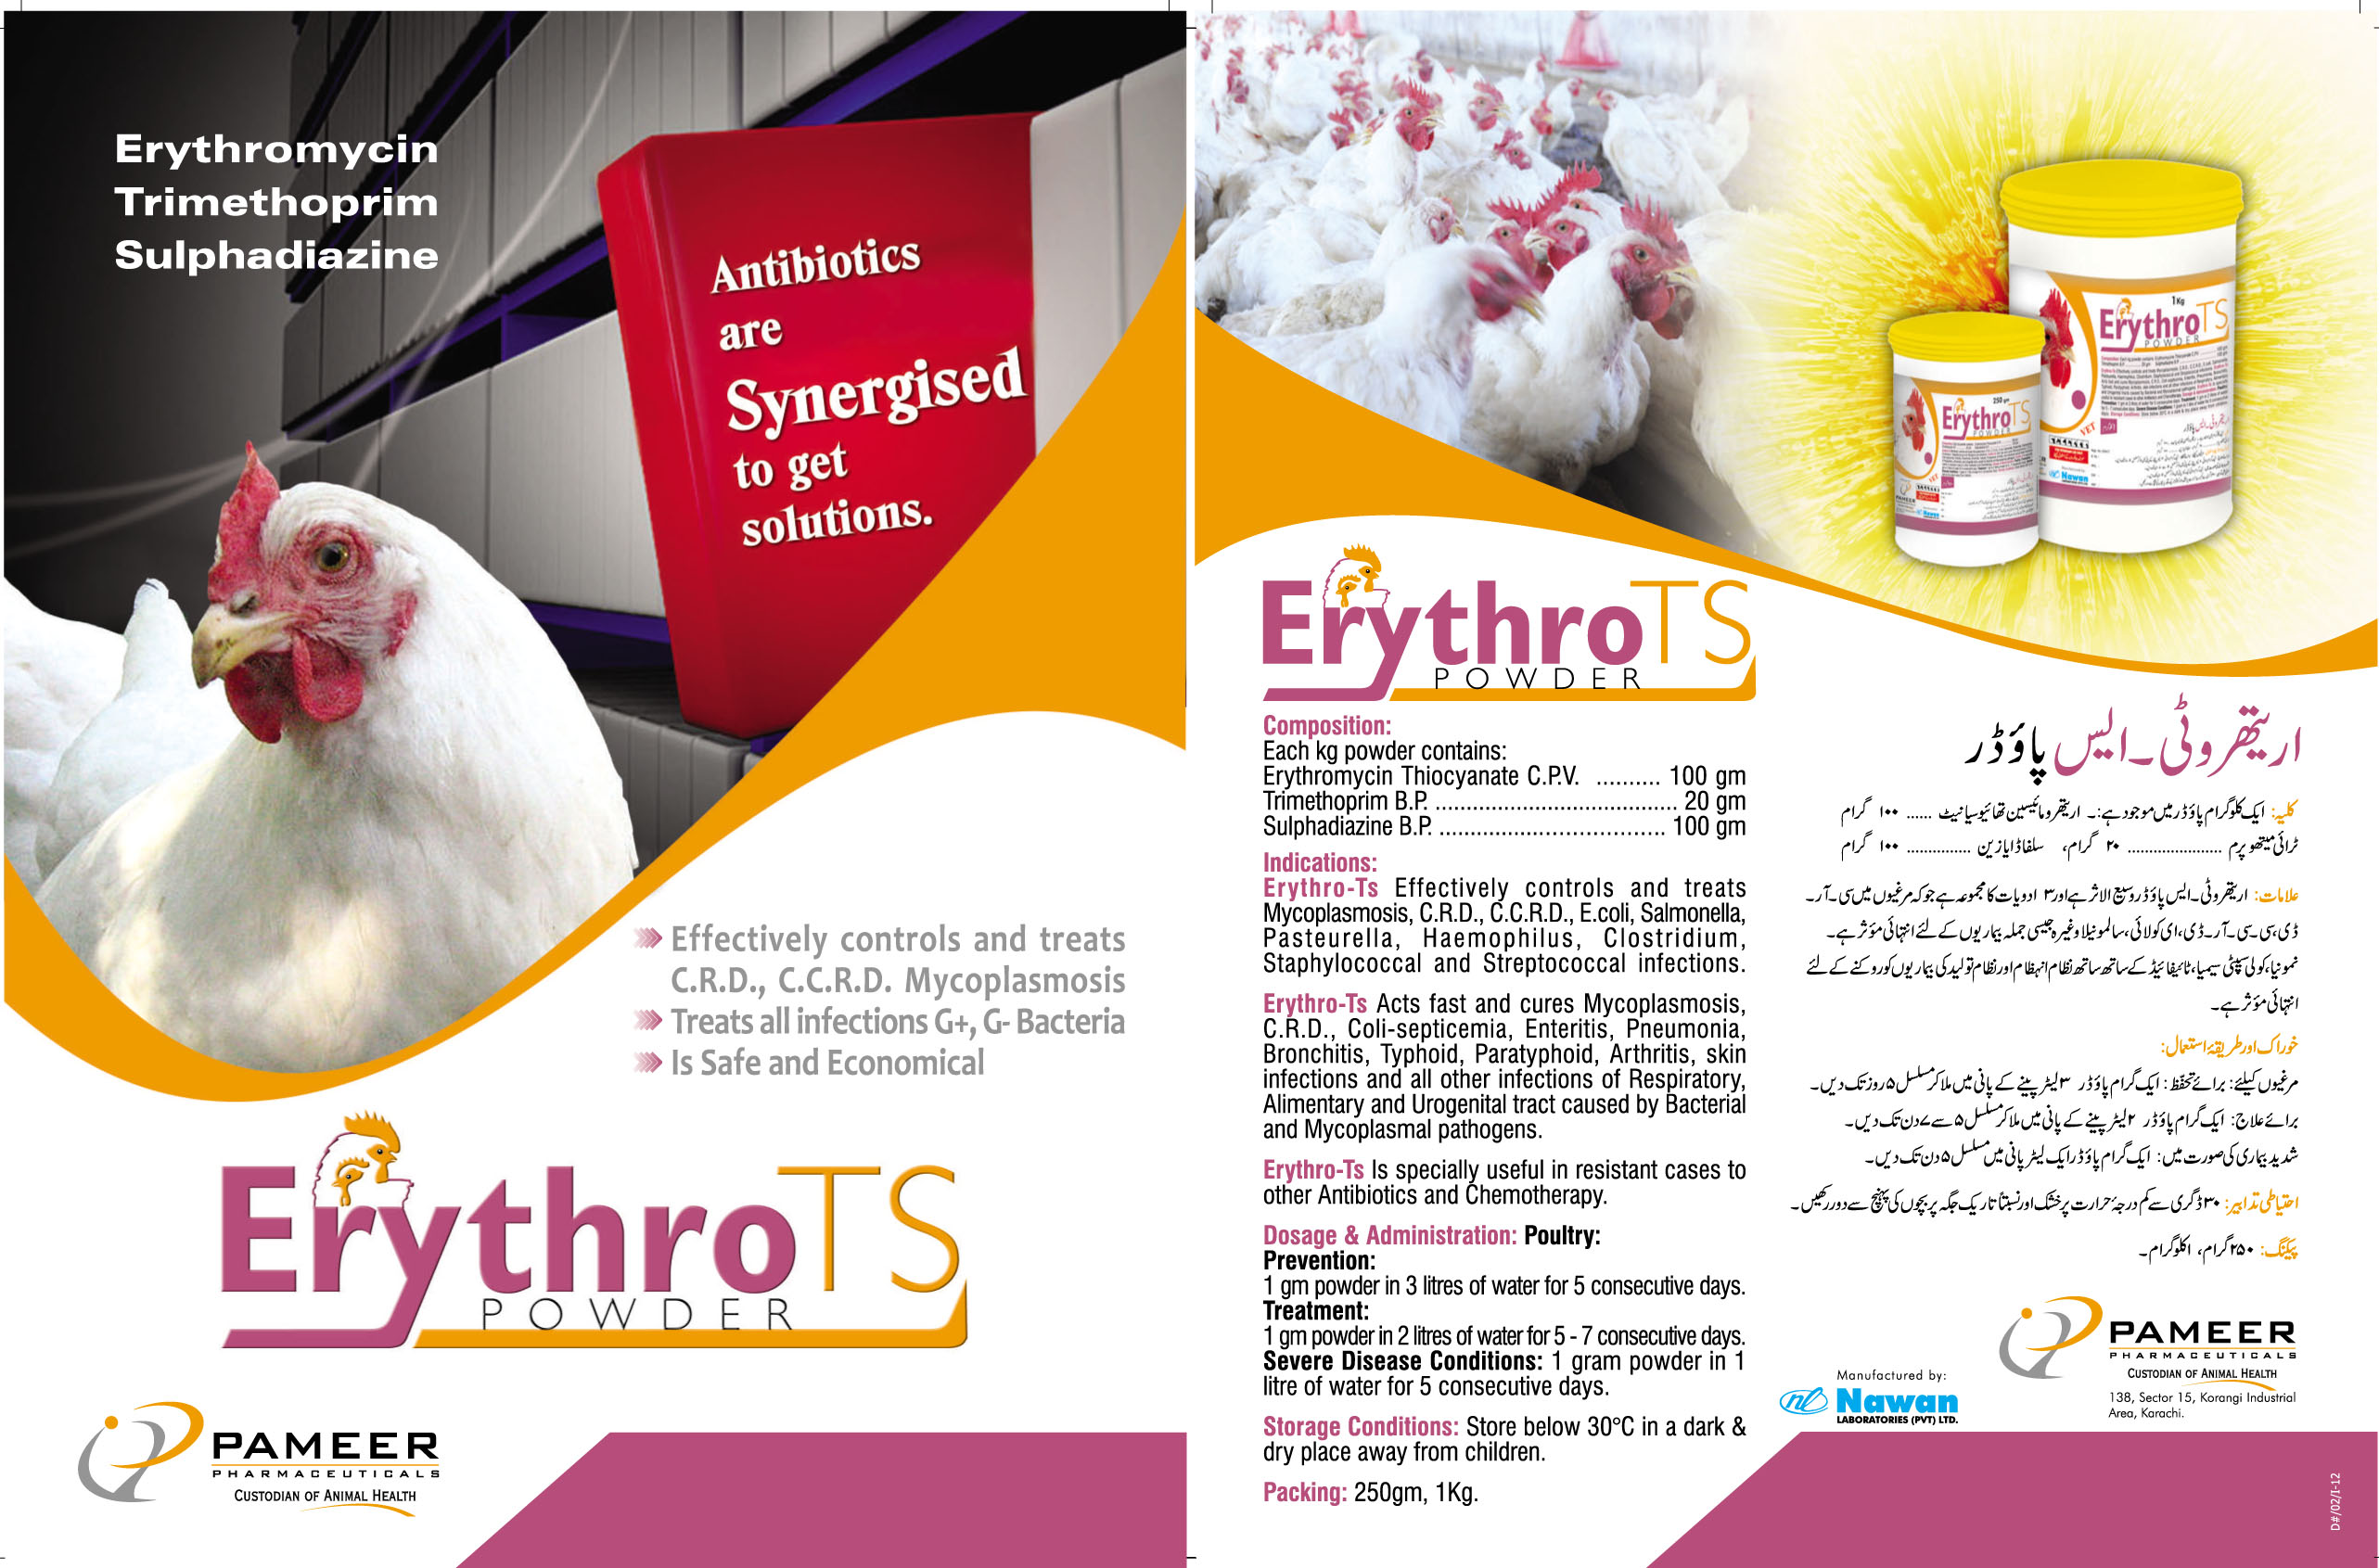 Erythro-TS Powder!